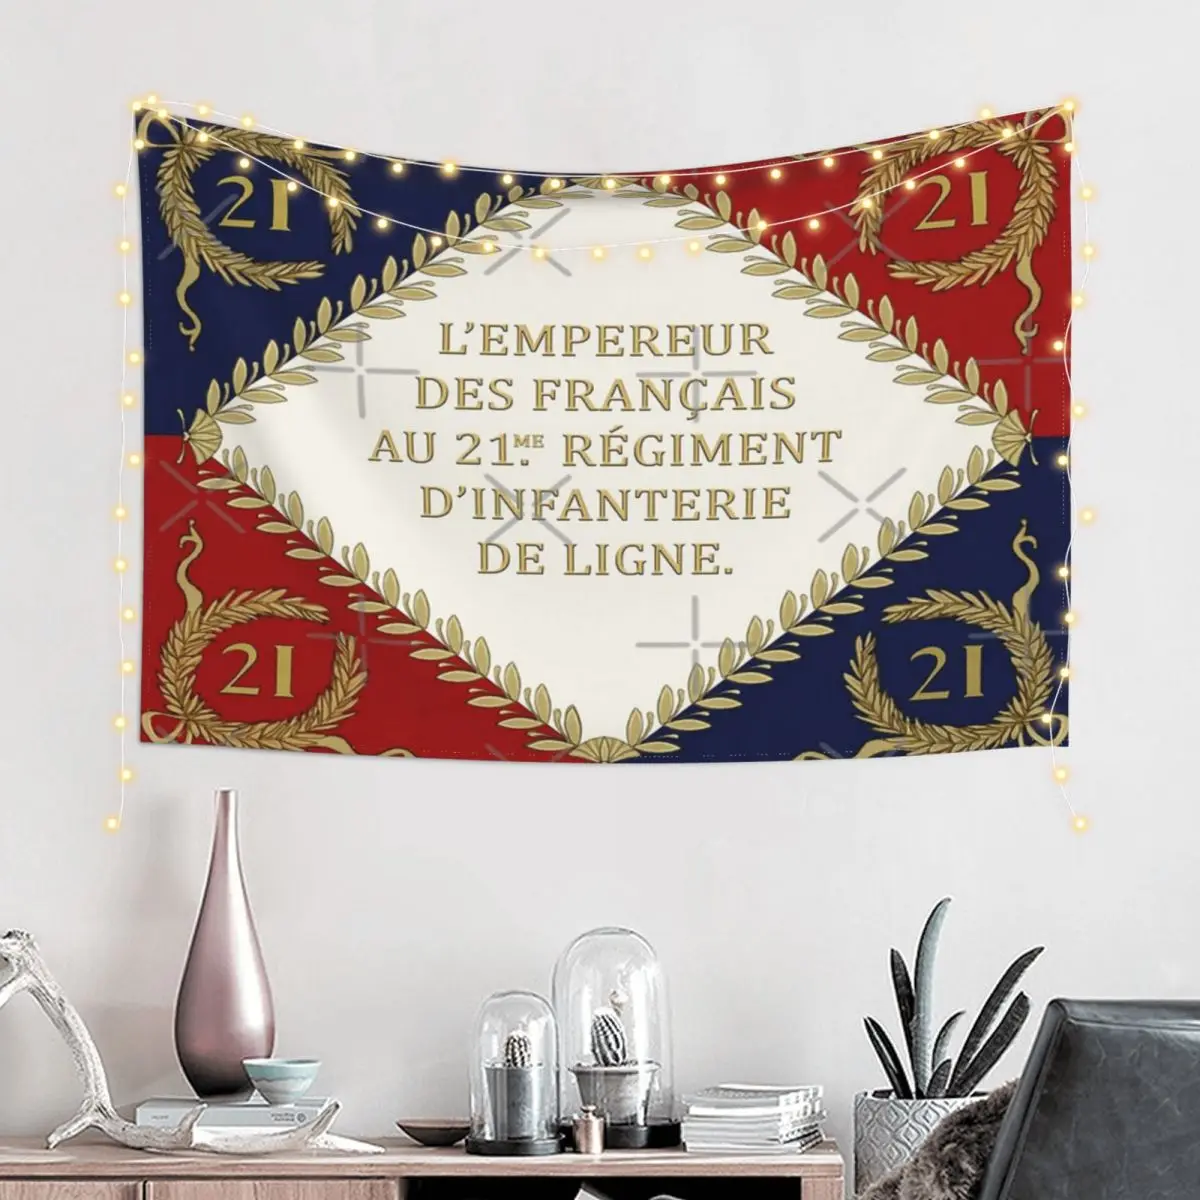 

Французский Императорский флаг, Настенный декор, гобелен для помещений и офиса, идеальный подарок из полиэстера, нежный индивидуальный подарок на день рождения